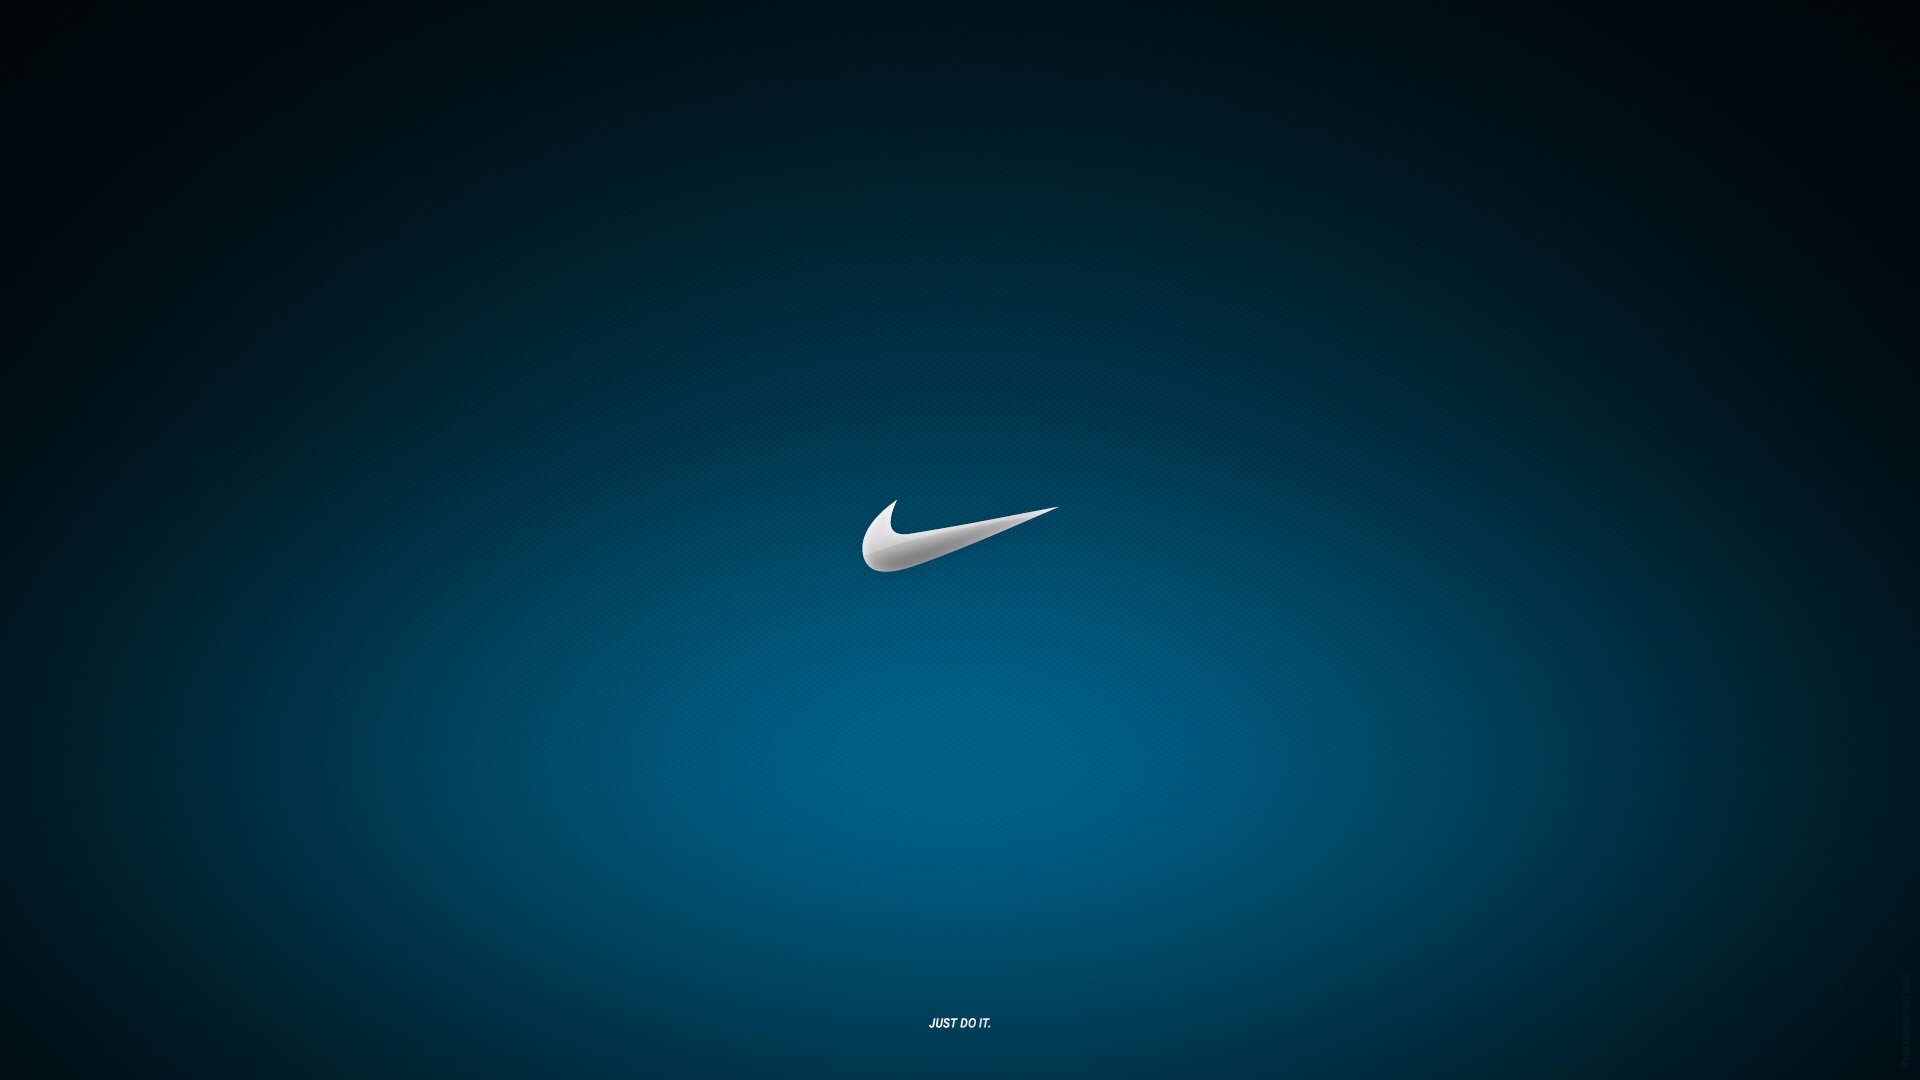 Description Nike Logo Wallpaper is a hi res Wallpaper for pc desktops